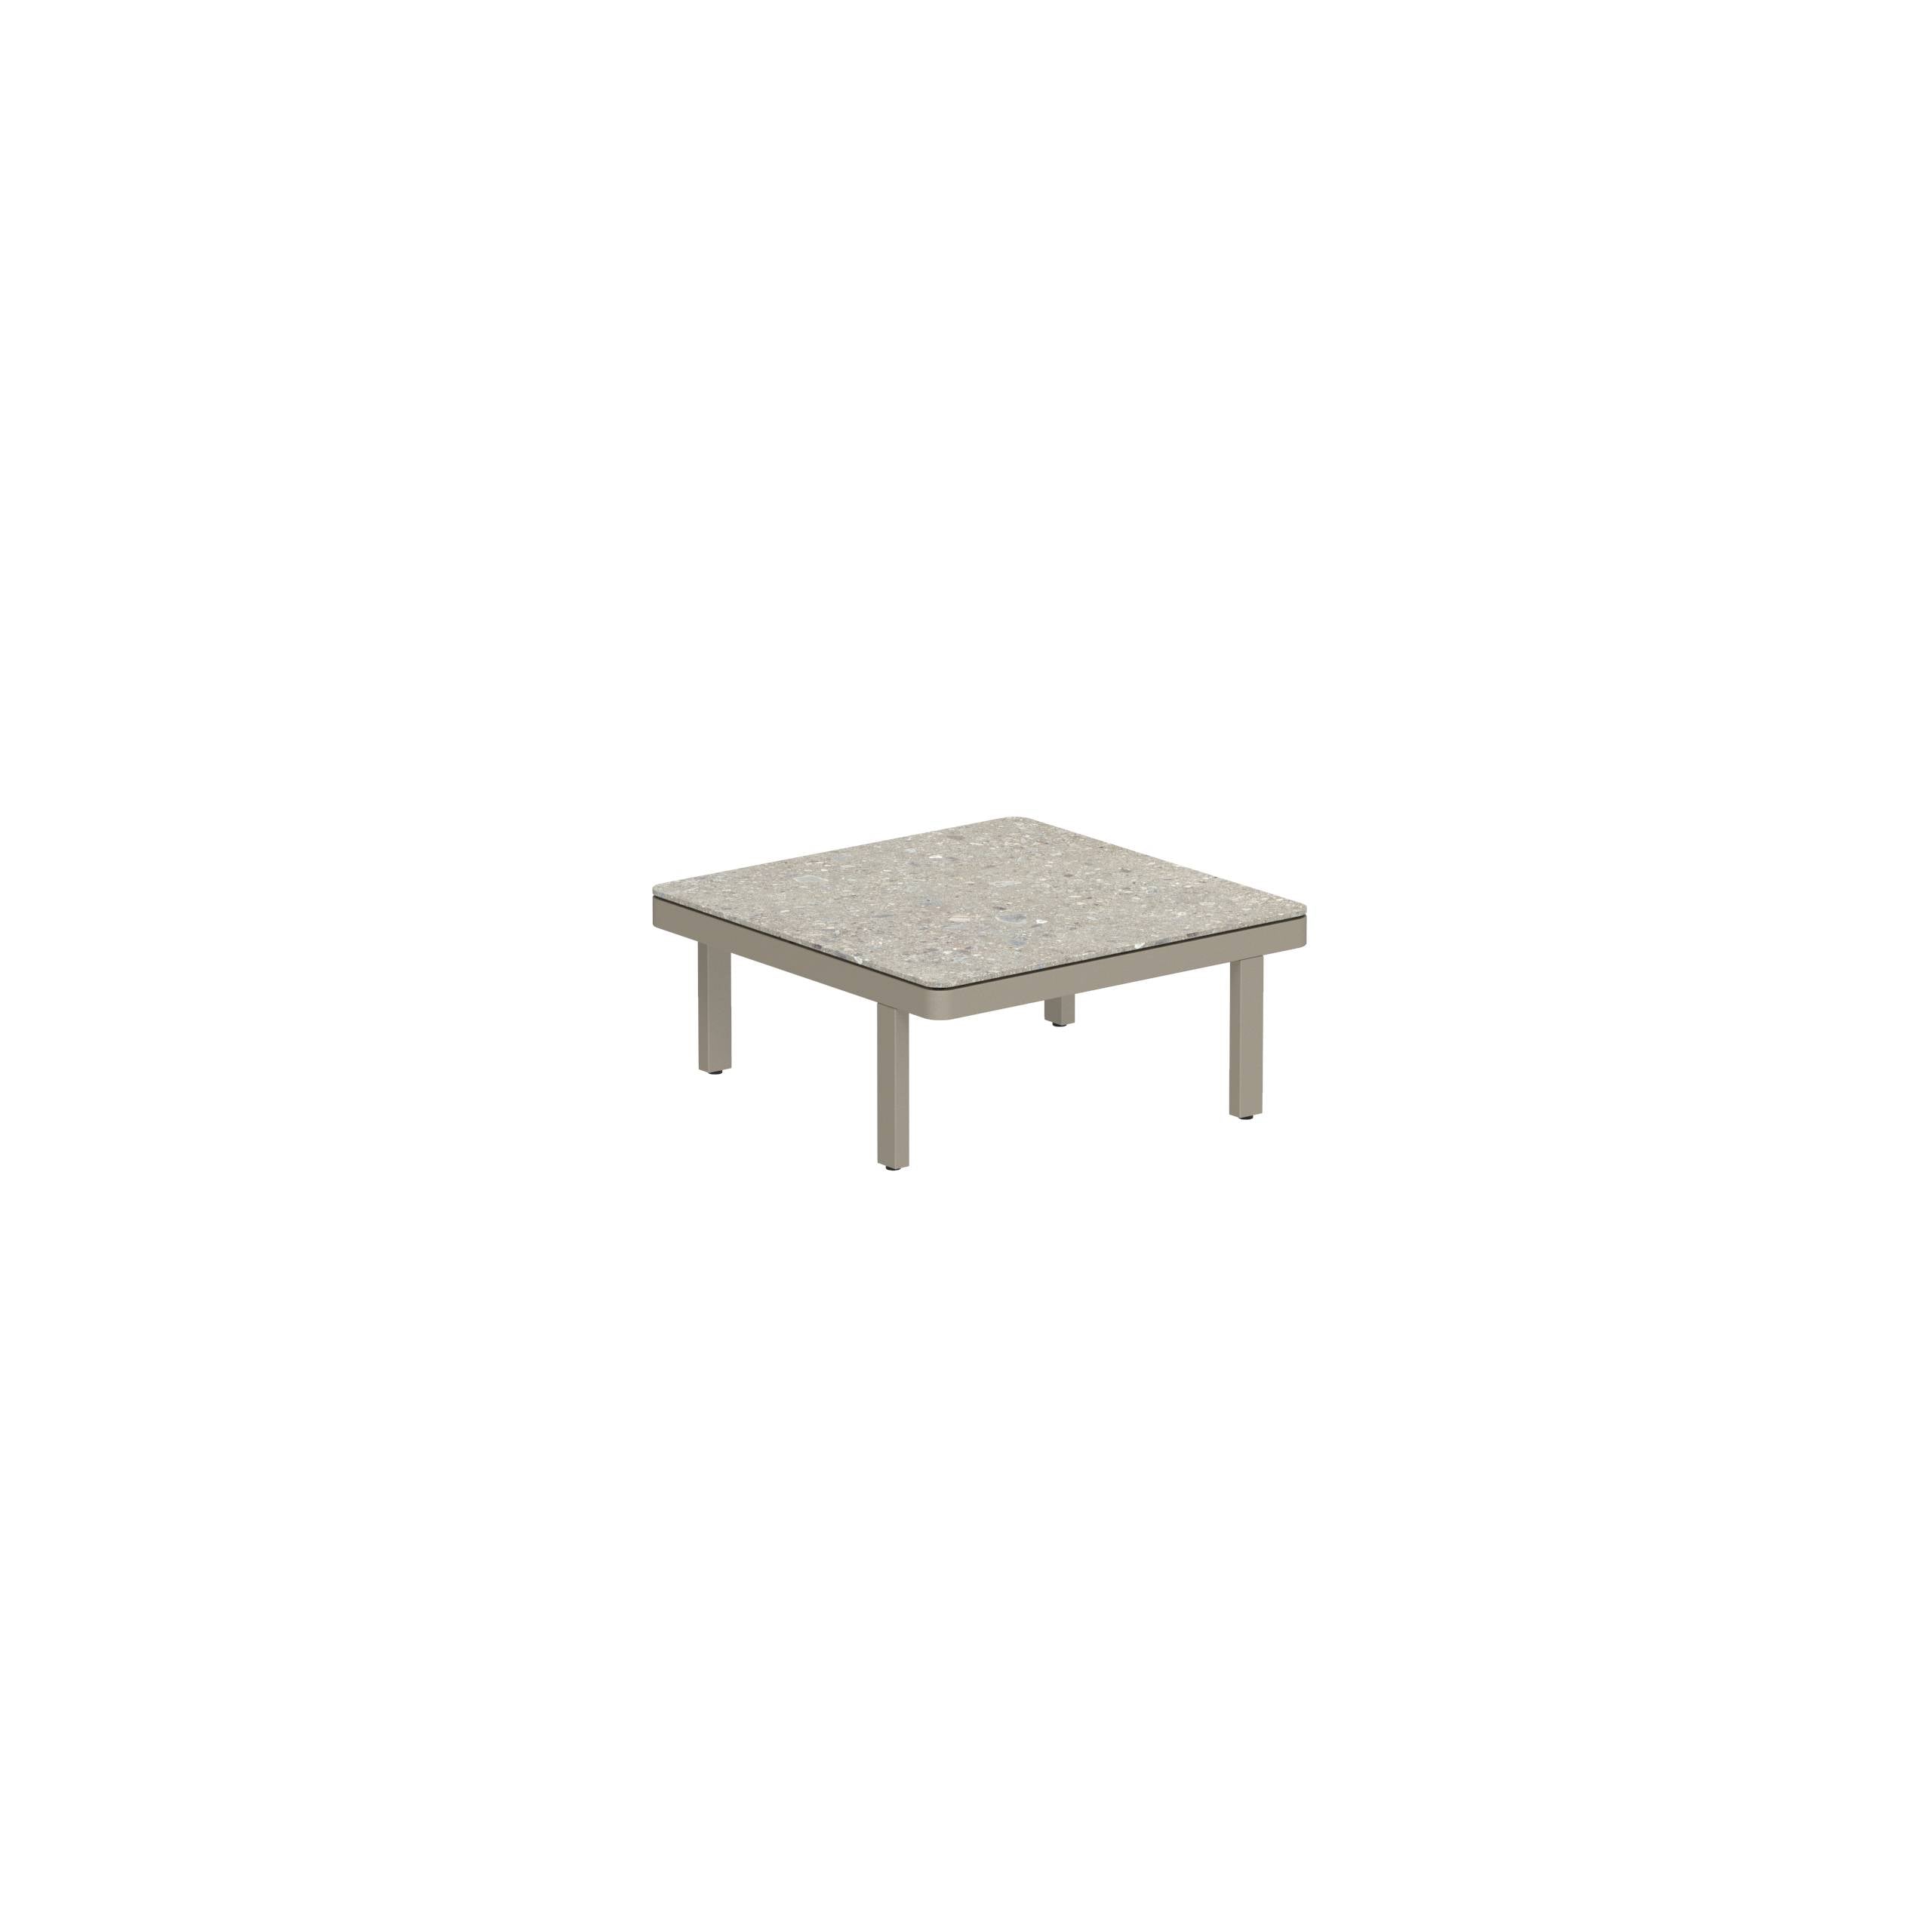 Alura Lounge 80 Lth Table 80x80x34cm Sand Ceramic Tabletop Ceppo Dolomitica